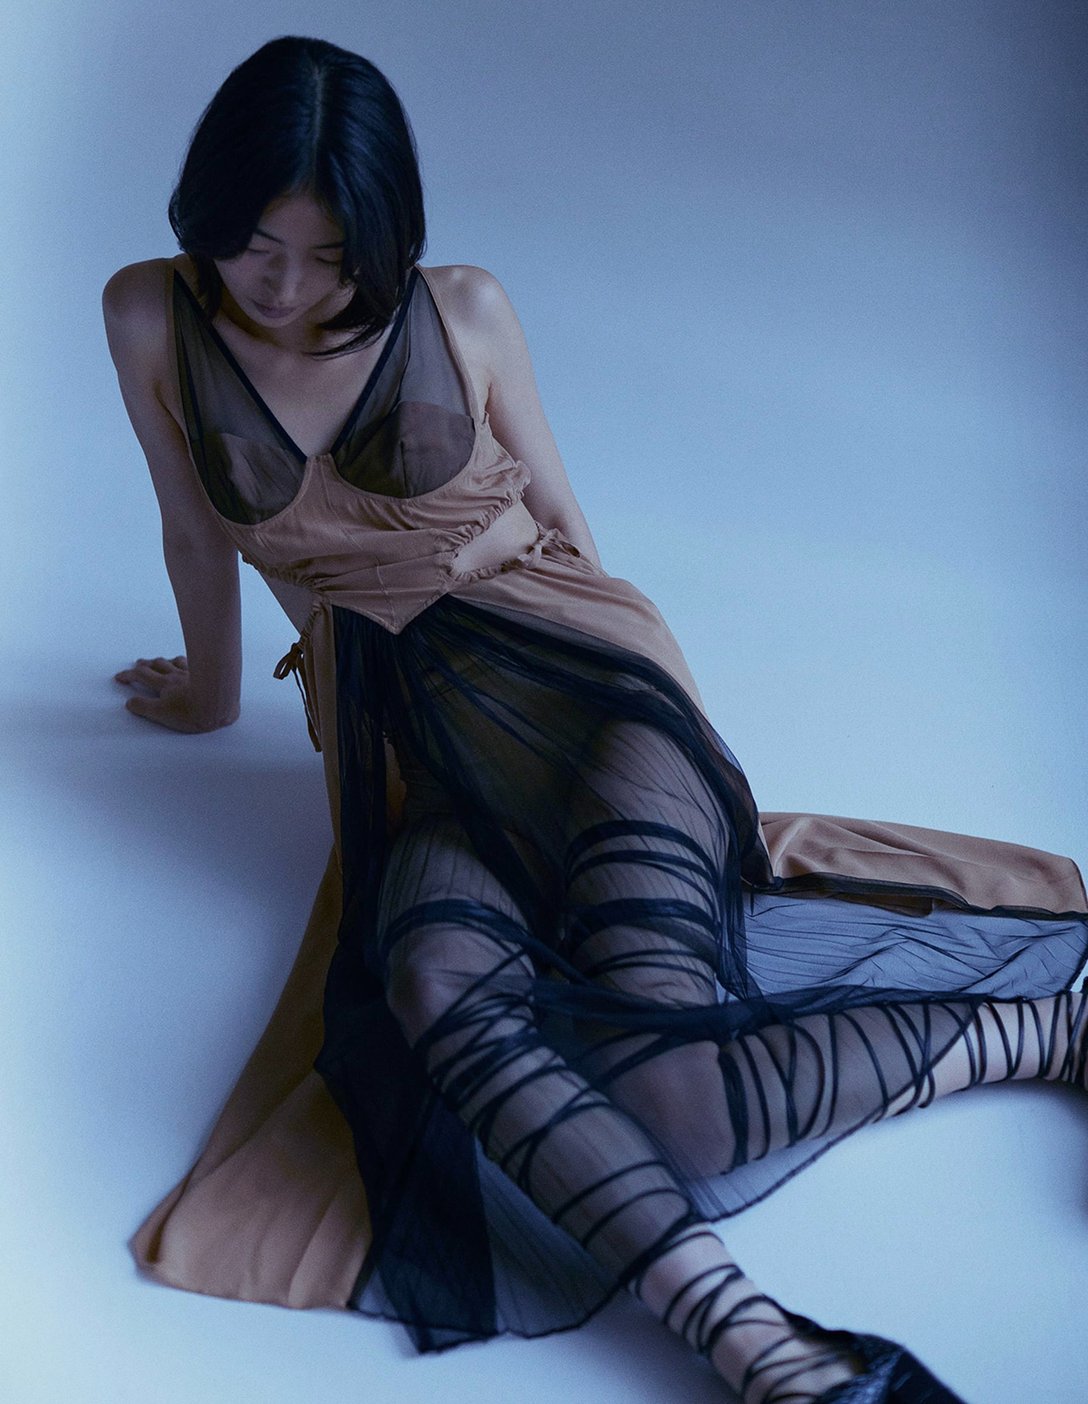 シアー素材の使われたワンピースを身に纏っている女性モデル